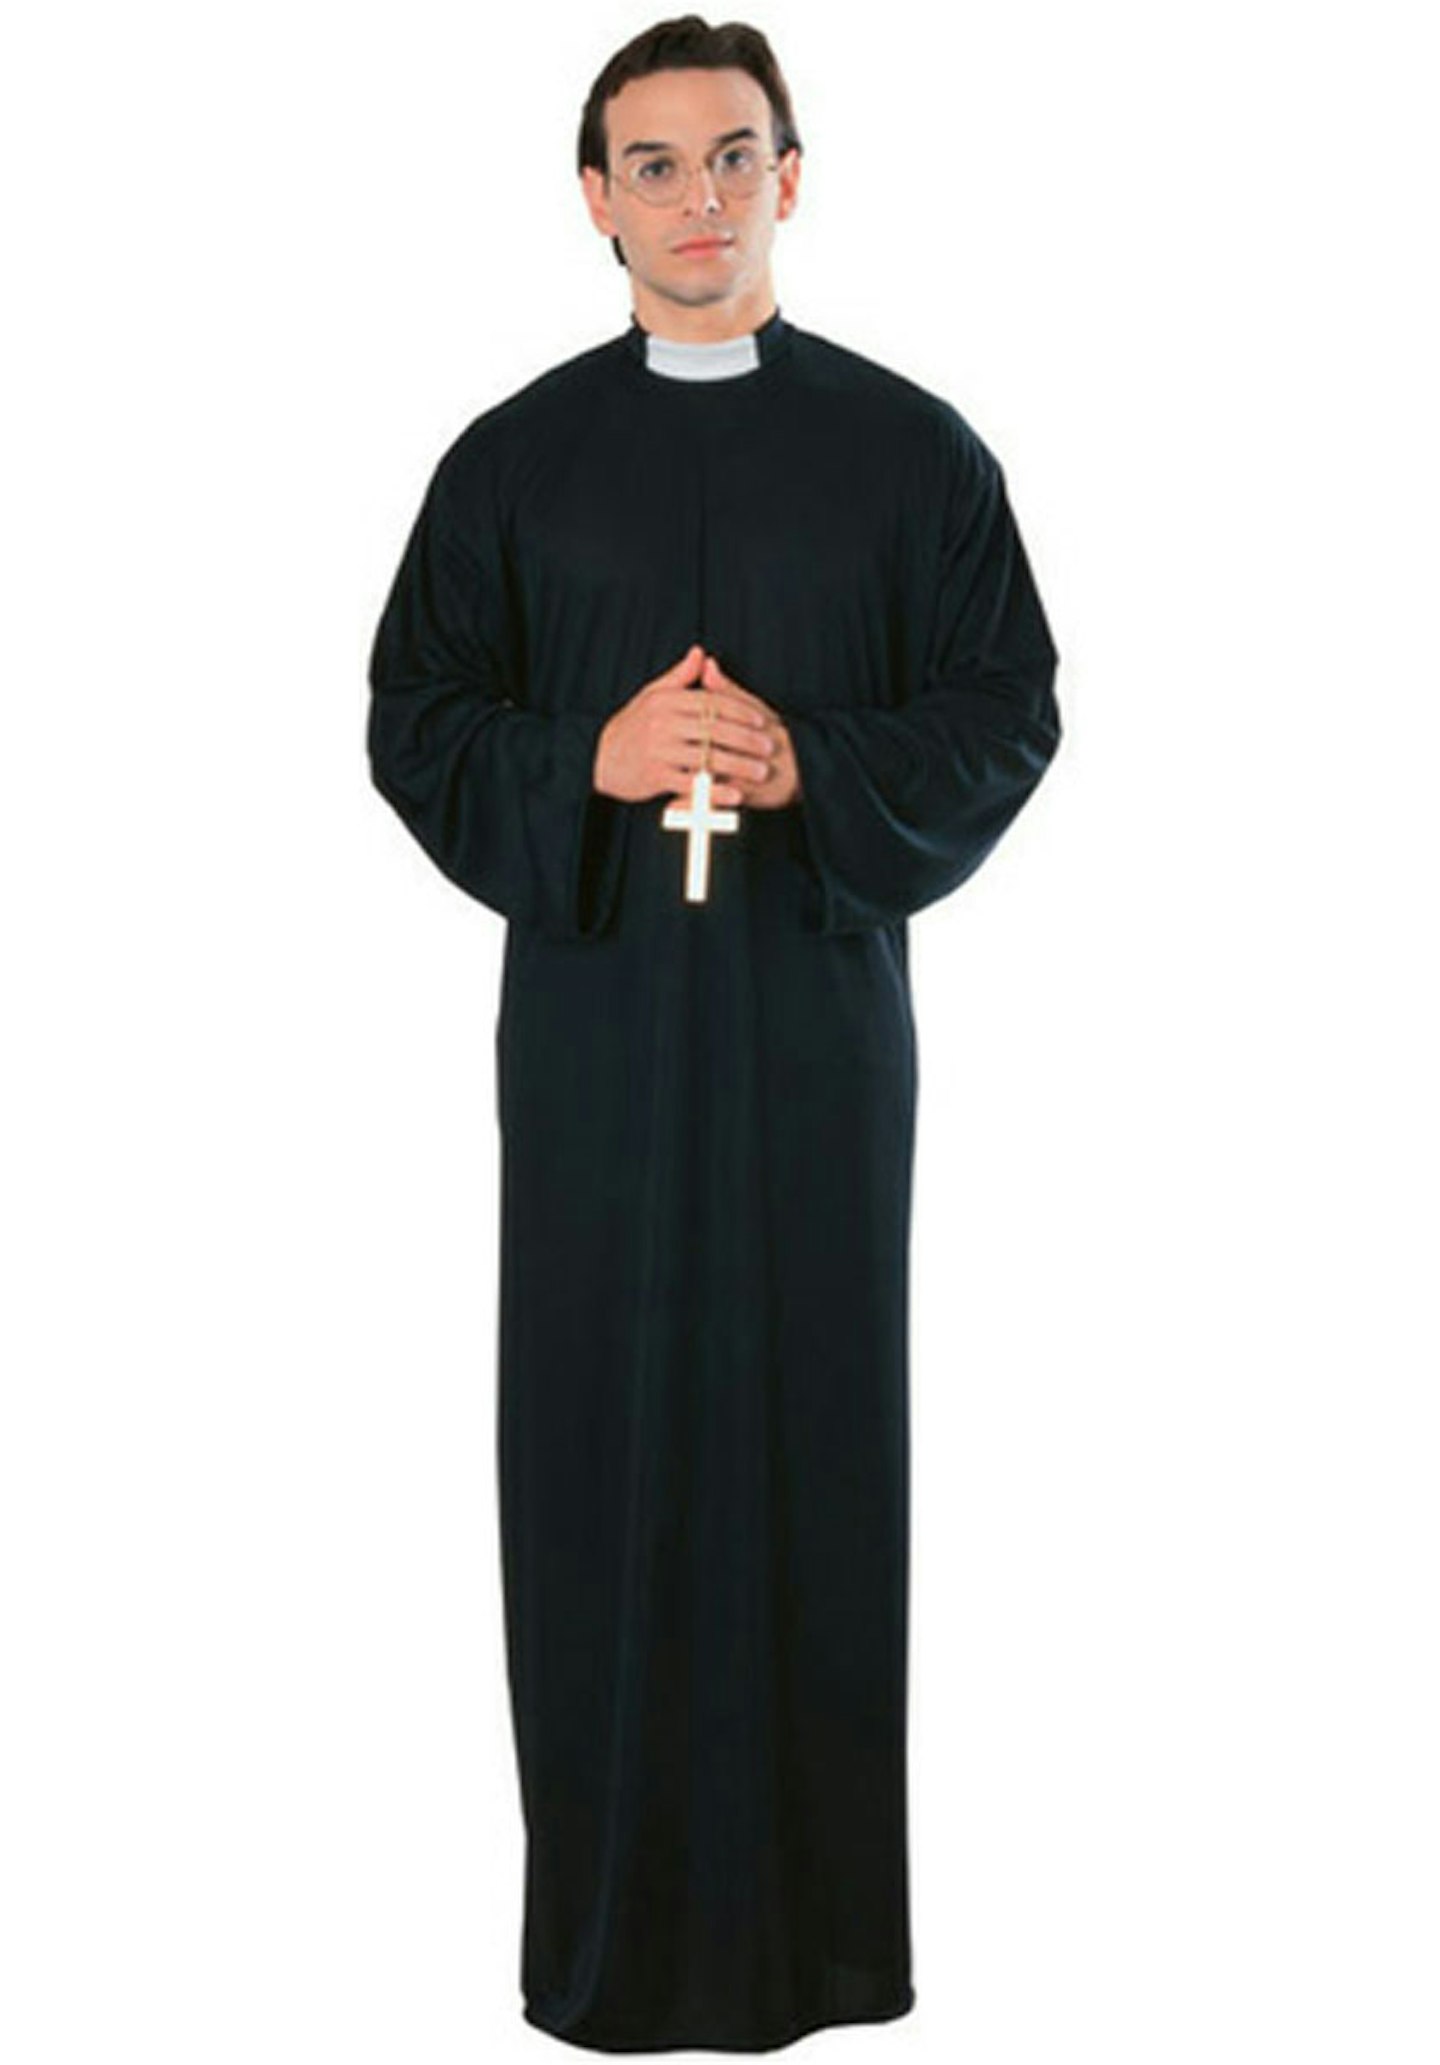 Priest Costume, Escapade